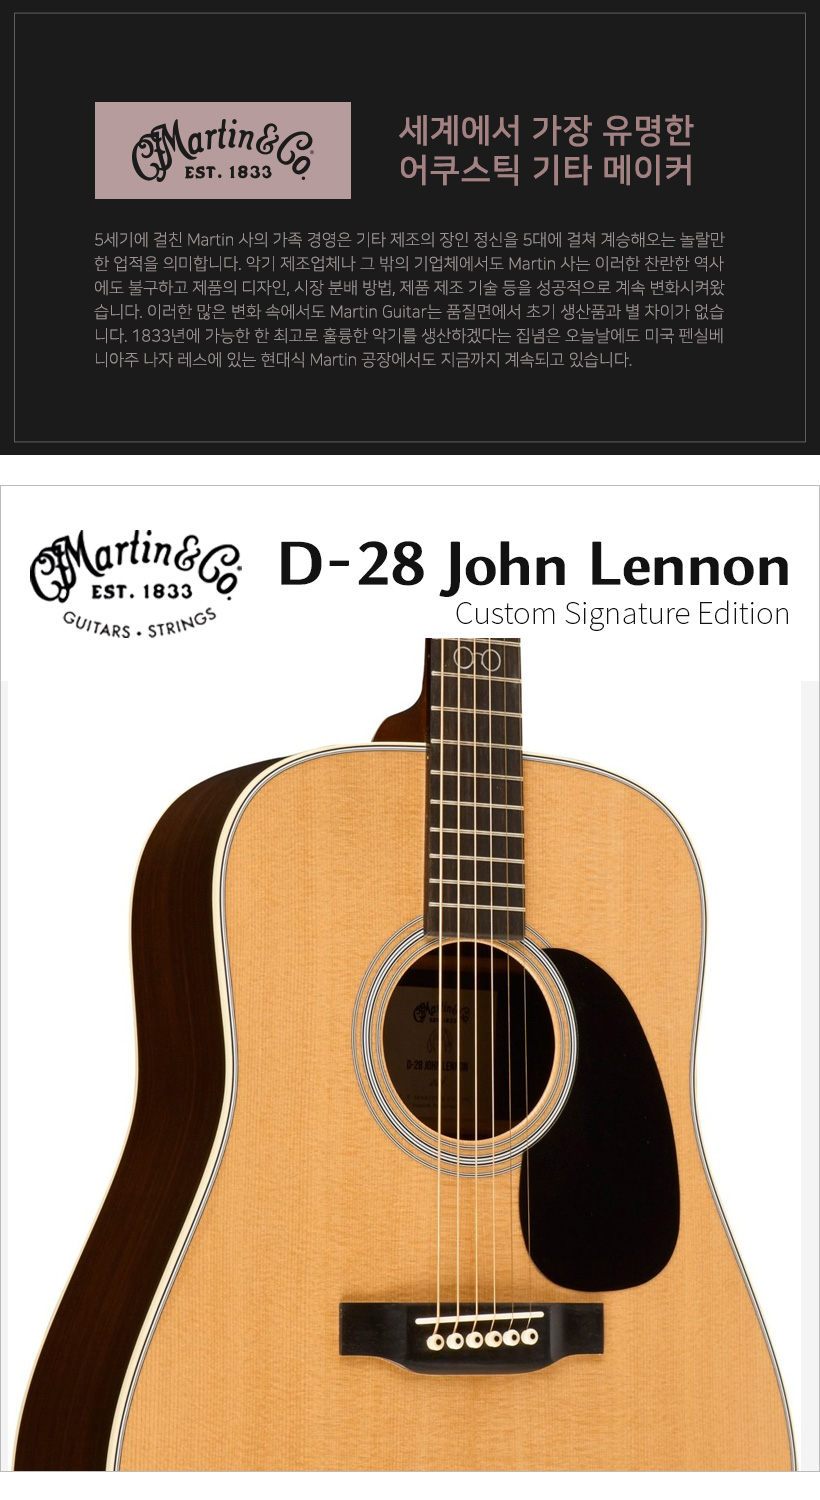 MARTIN 어쿠스틱기타 D-28_John_Lennon